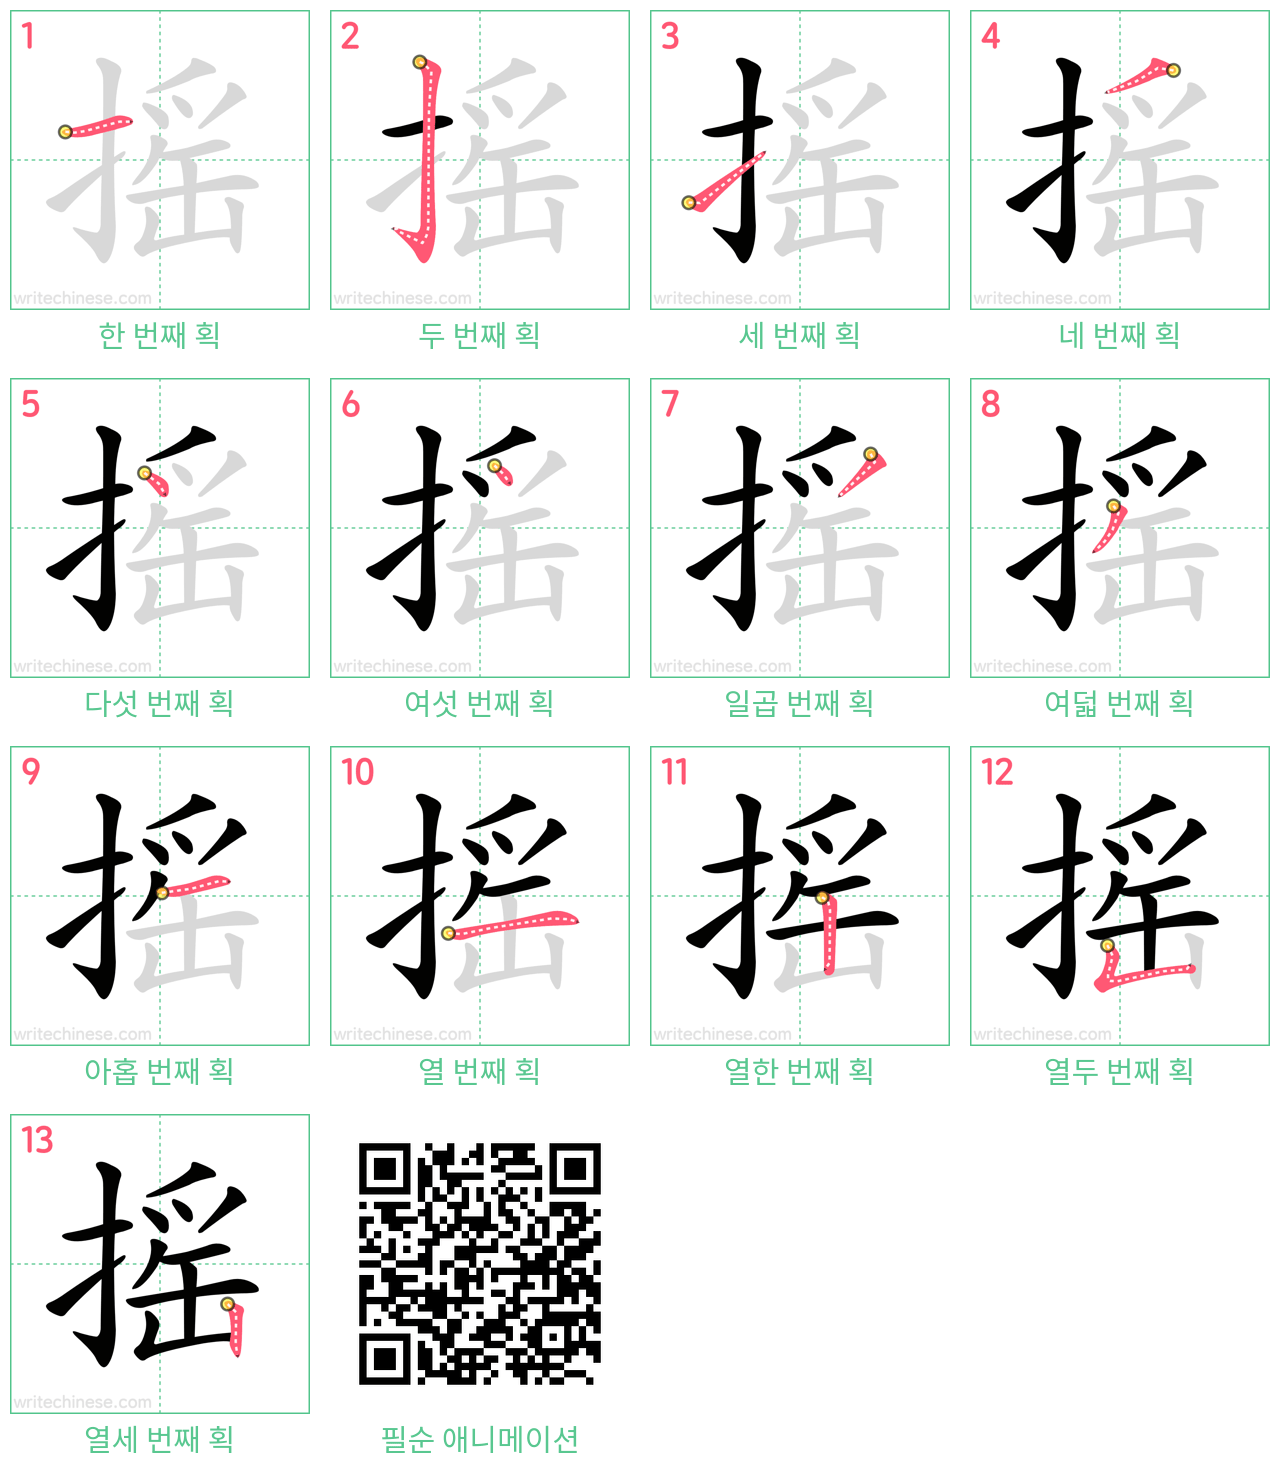 摇 step-by-step stroke order diagrams